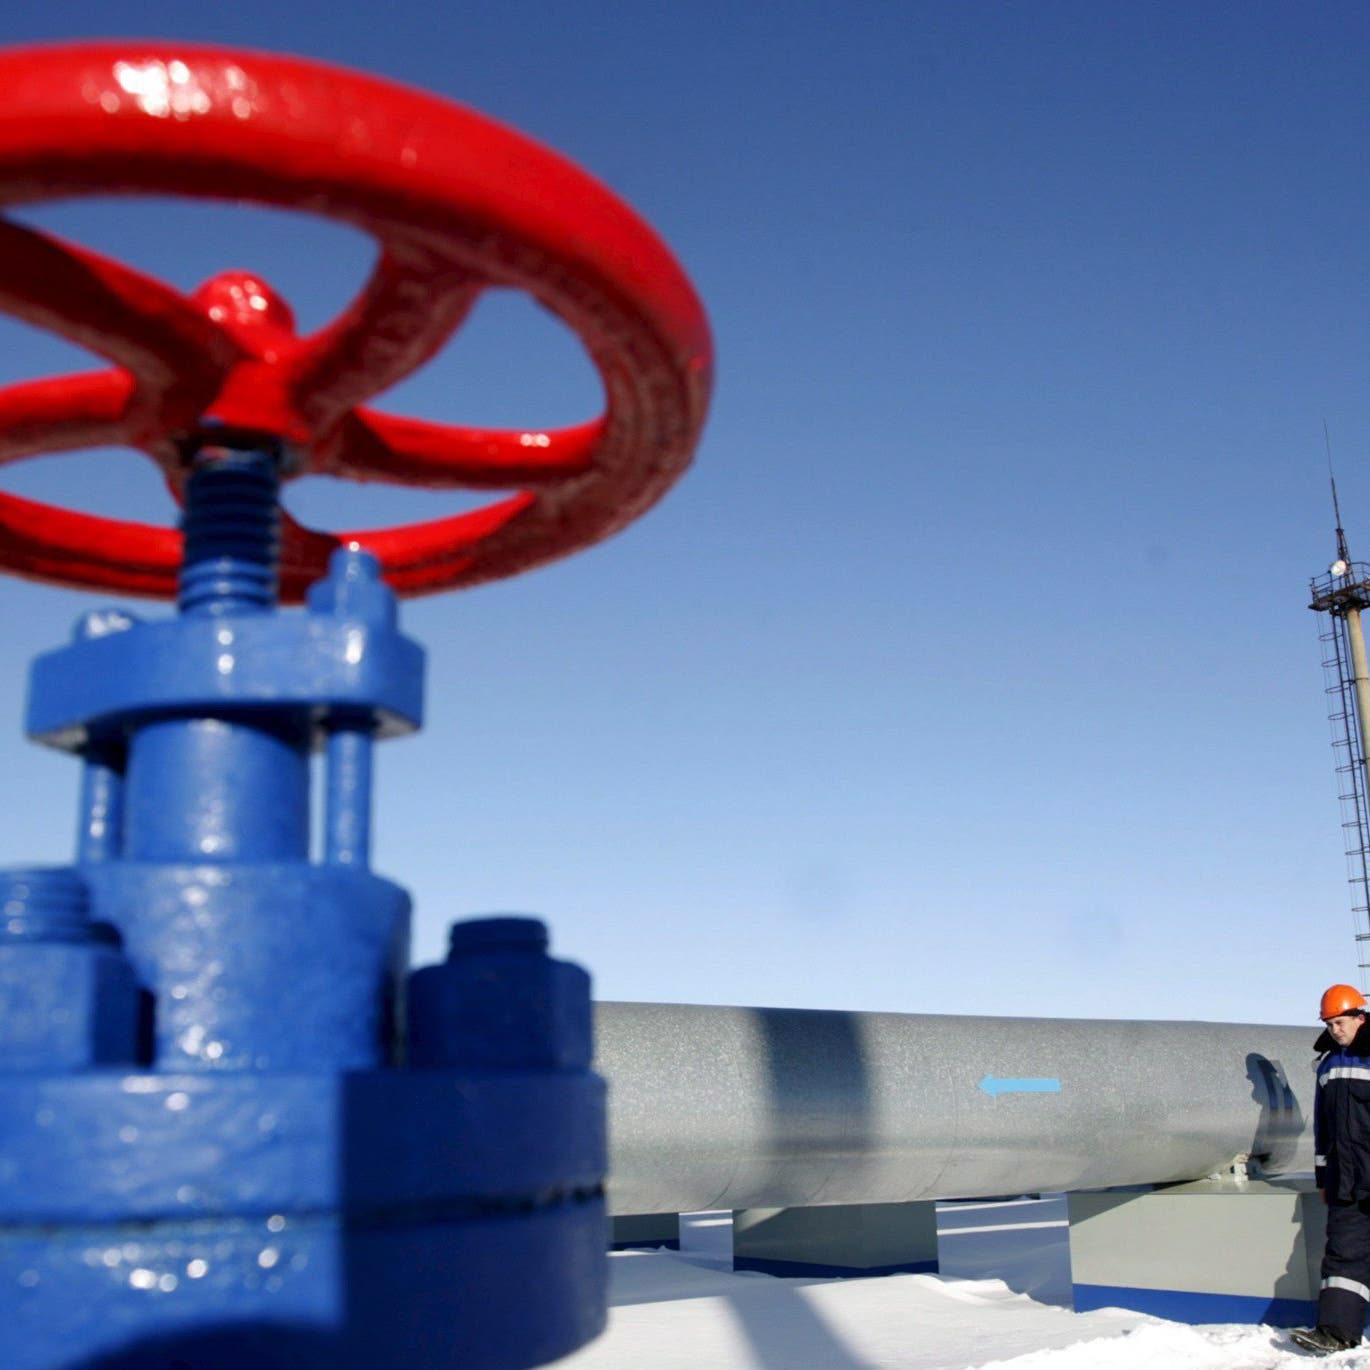 الكرملين يتوقع بدء تسديد ثمن الغاز بالروبل في شهر مايو المقبل